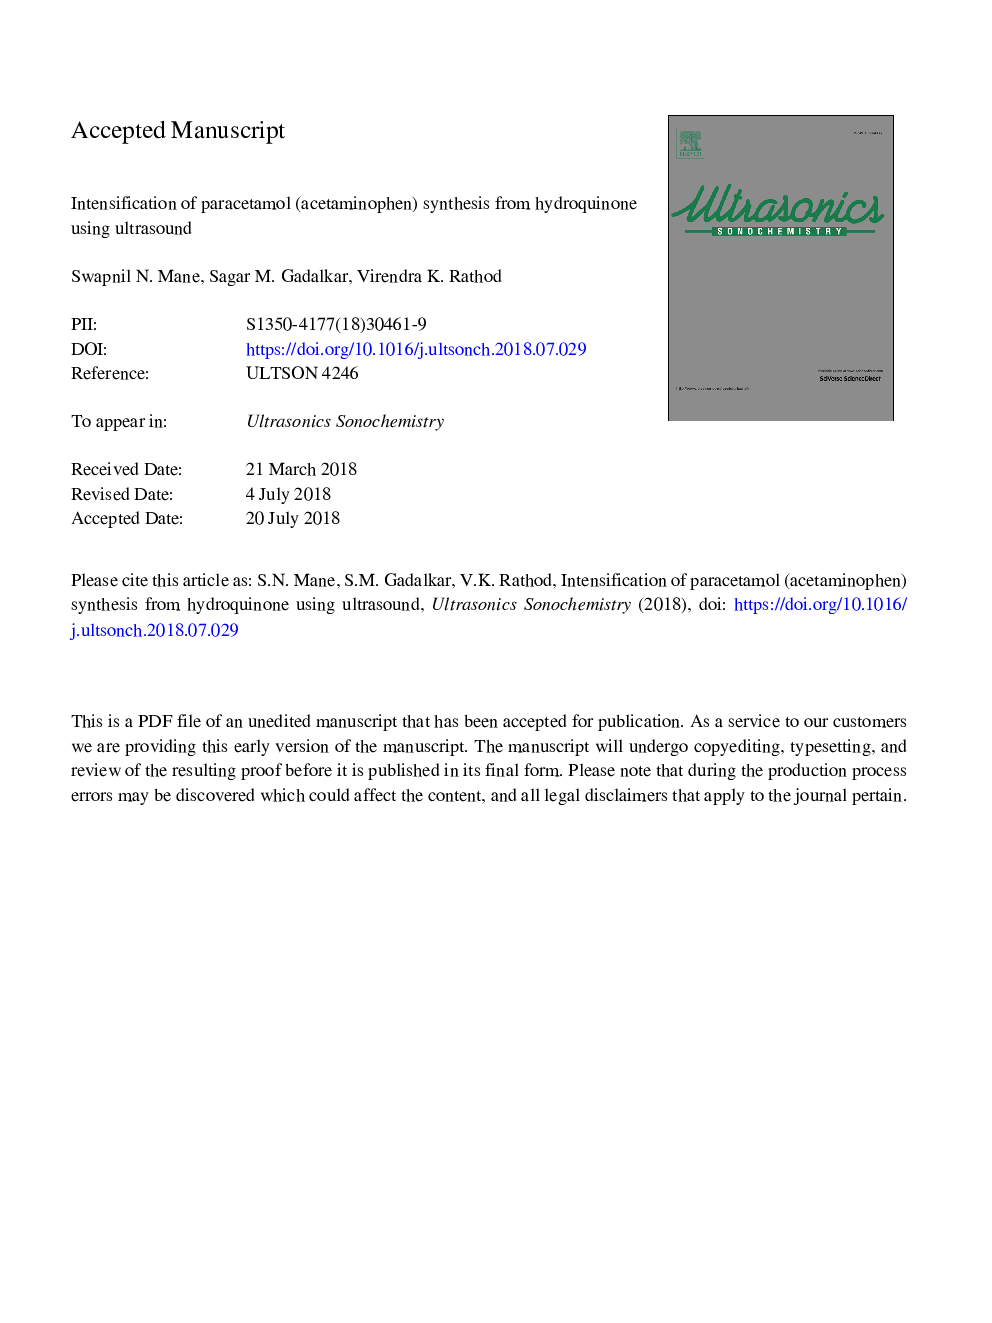 تقویت سنتز پاراستامول (استامینوفن) از هیدروکینون با استفاده از سونوگرافی